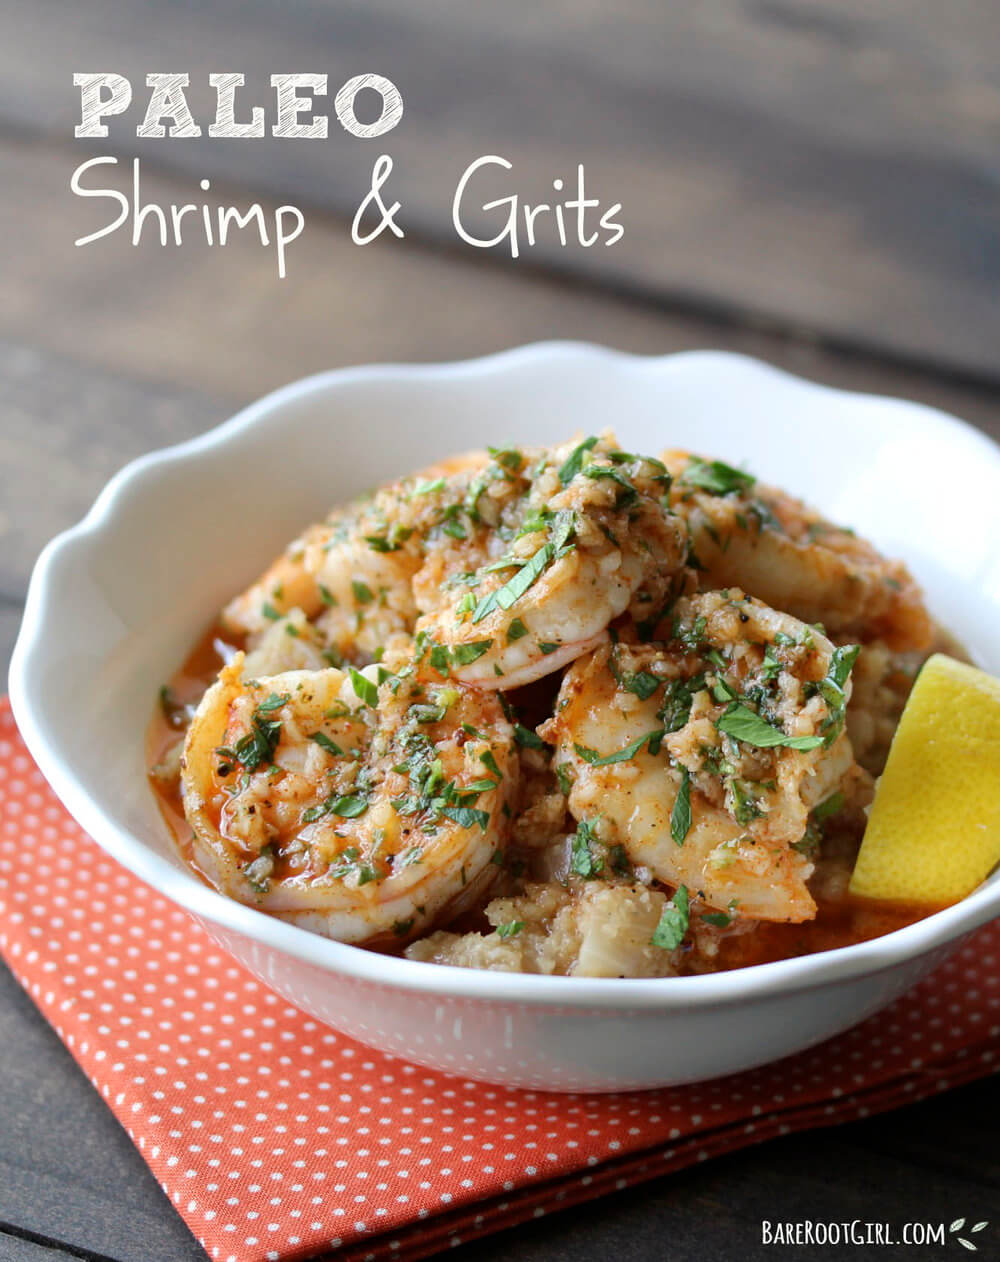 Low-carb shrimp & grits